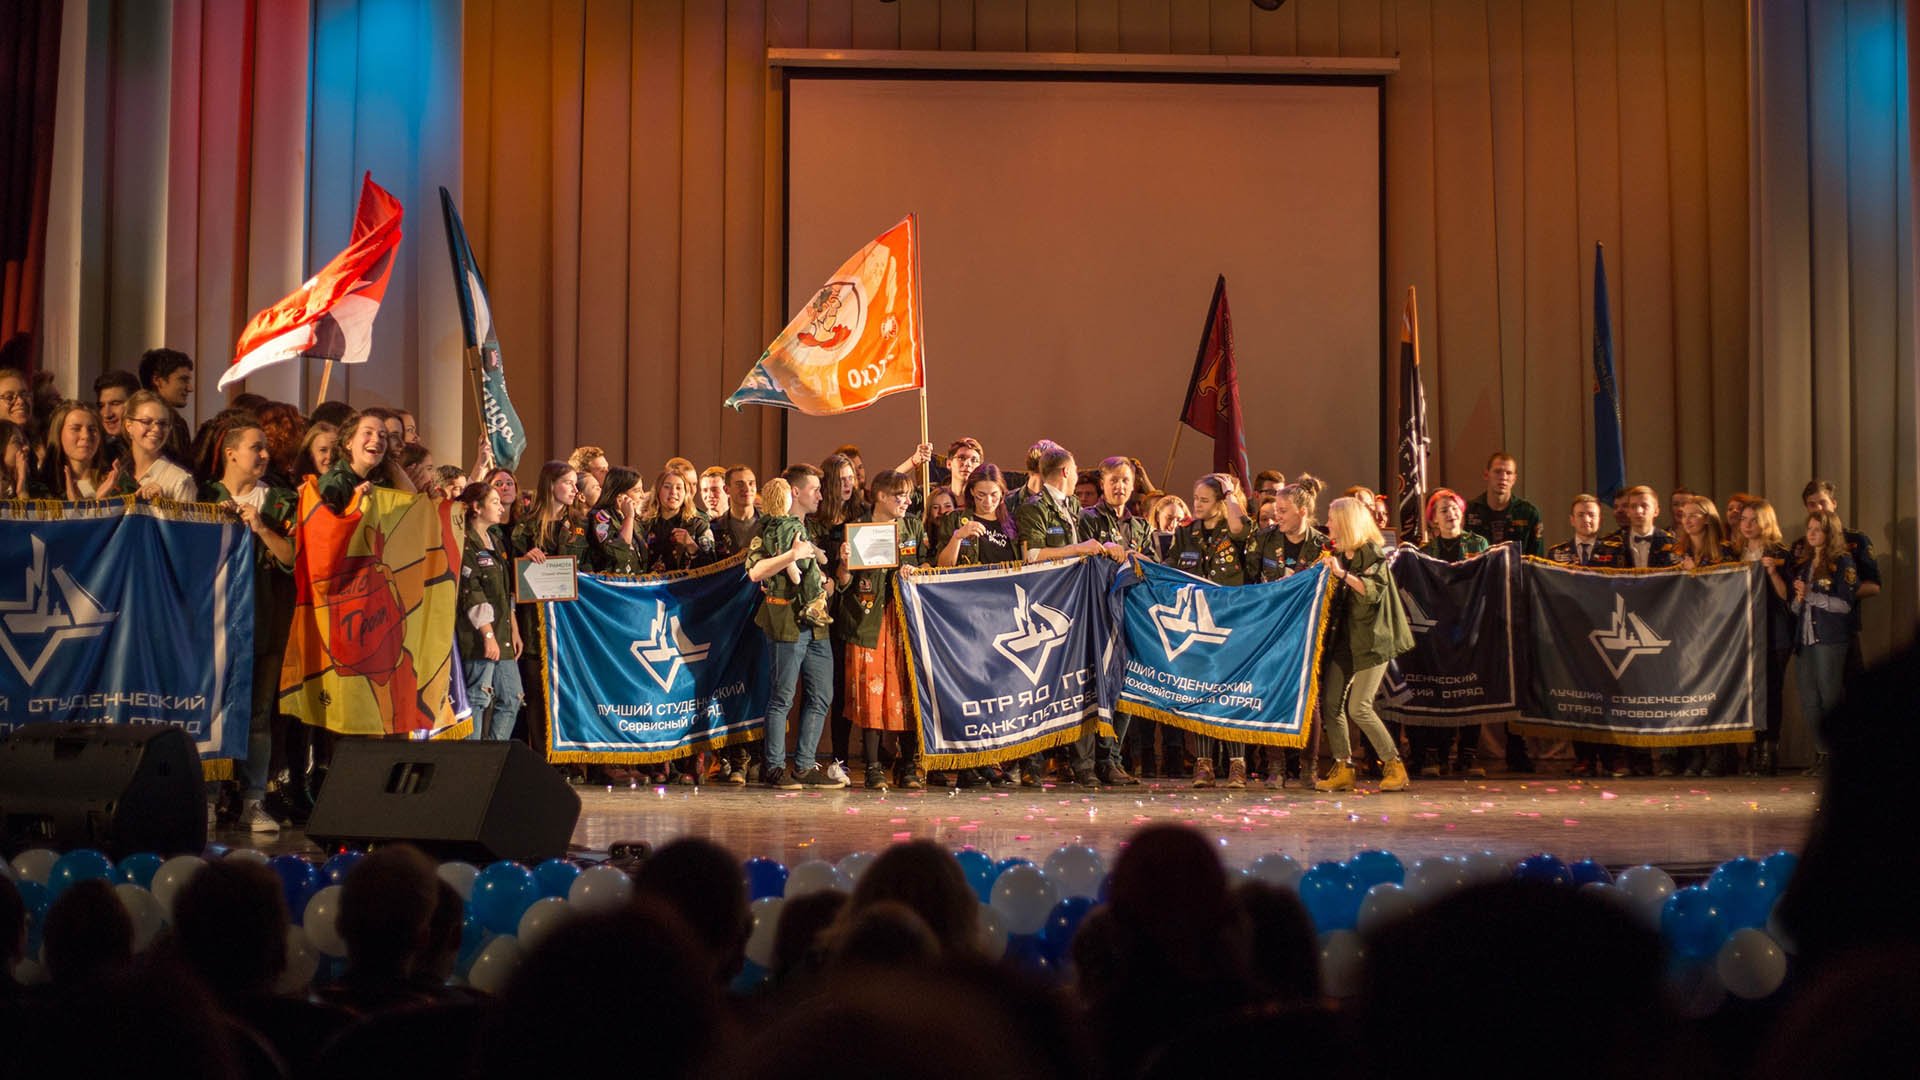 XIX Фестиваль студенческих отрядов Санкт-Петербурга прошел 6 декабря в культурном центре «Троицкий»